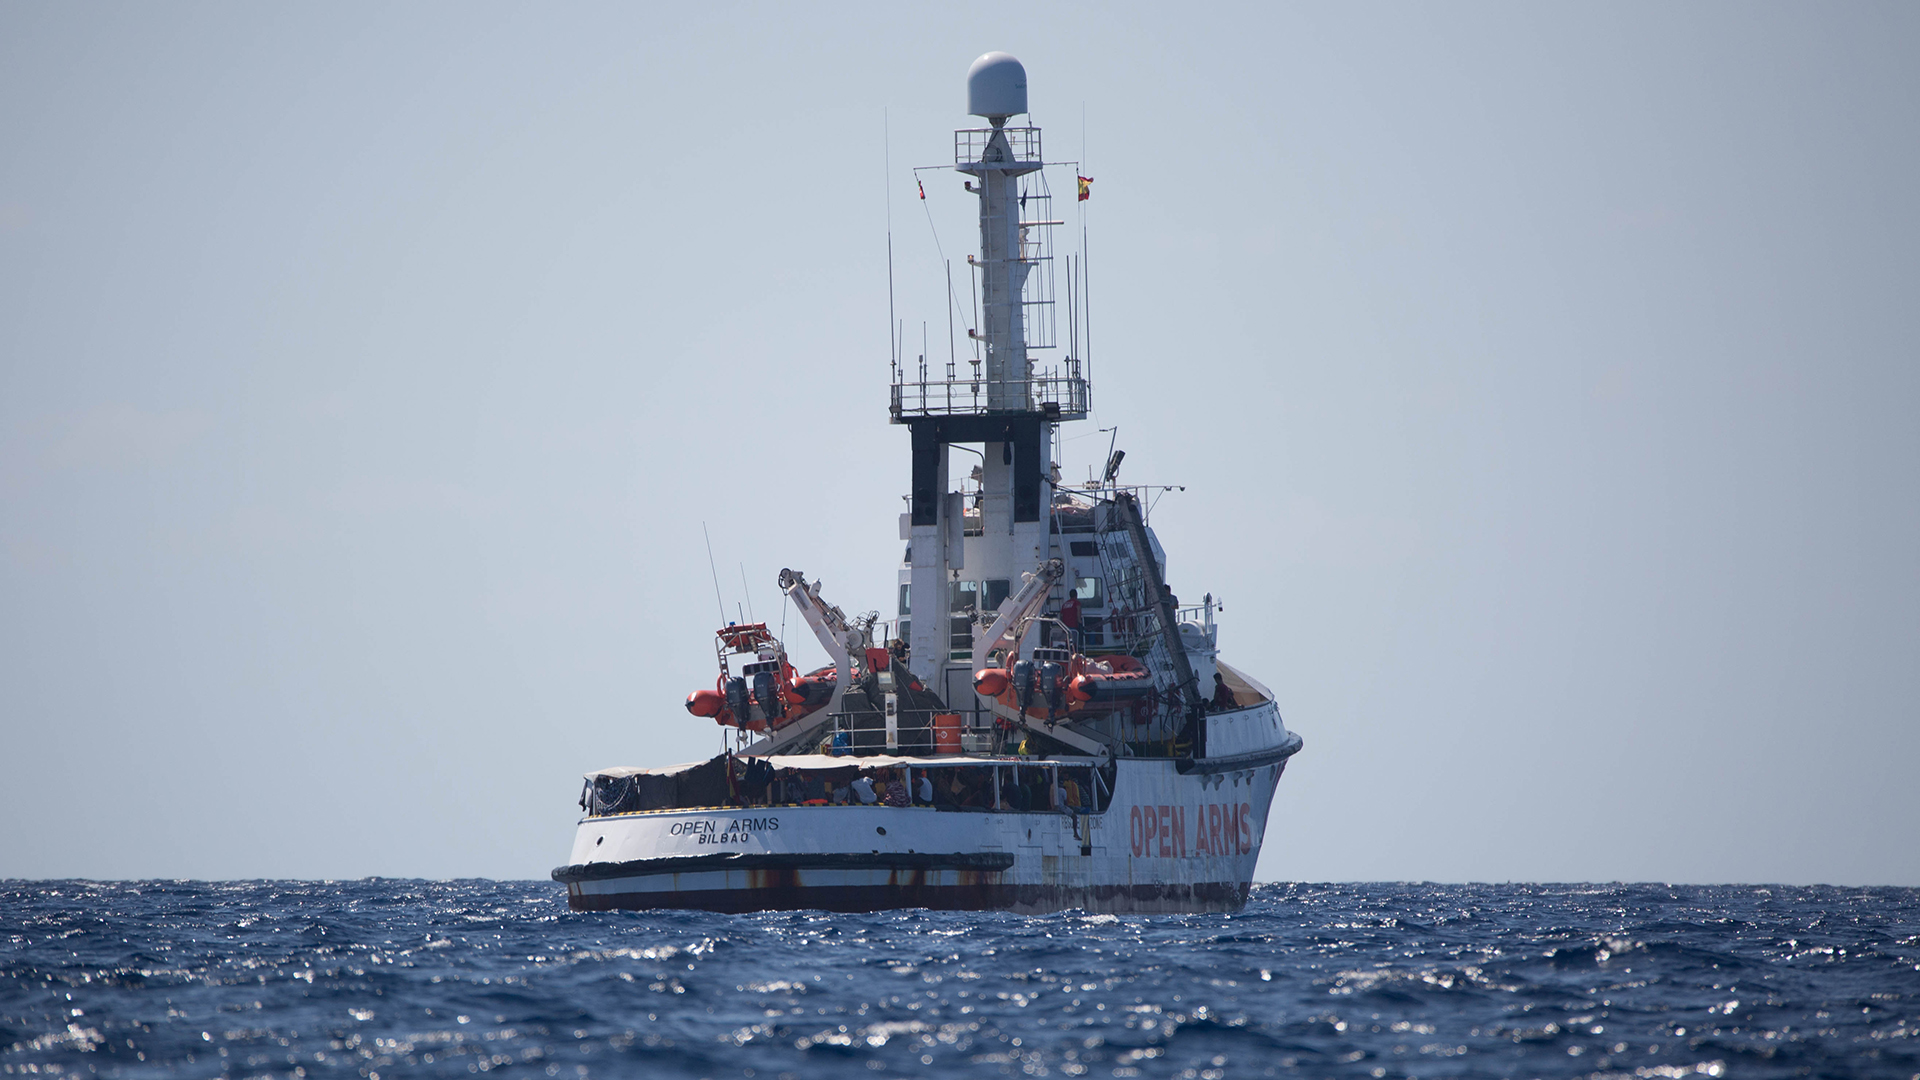 Das Schiff "Open Arms" der Hilfsorganisation Proactiva Open Arms wartet im Mittelmeer vor der Küste Lampedusas | dpa